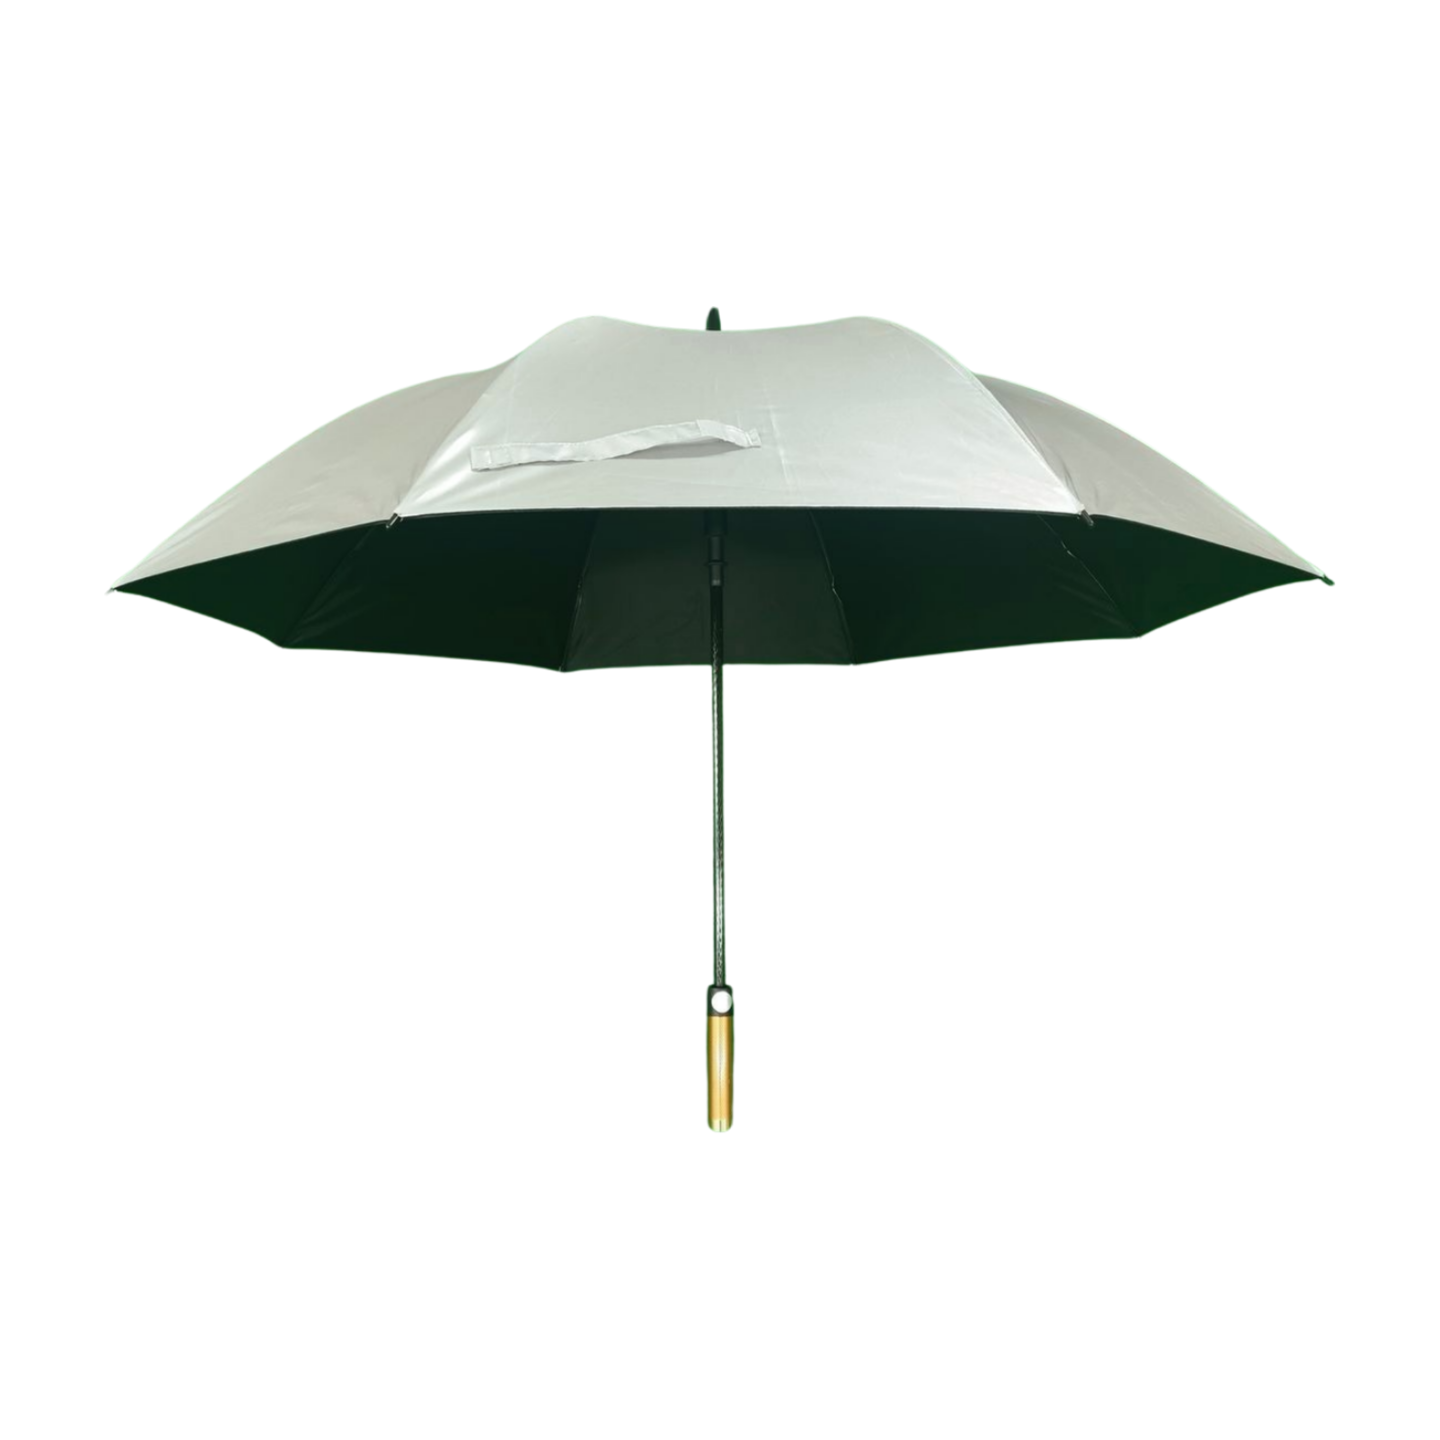 https://www.hodaumbrella.com/arc-54-sun-and…-golf-umbrella-product/